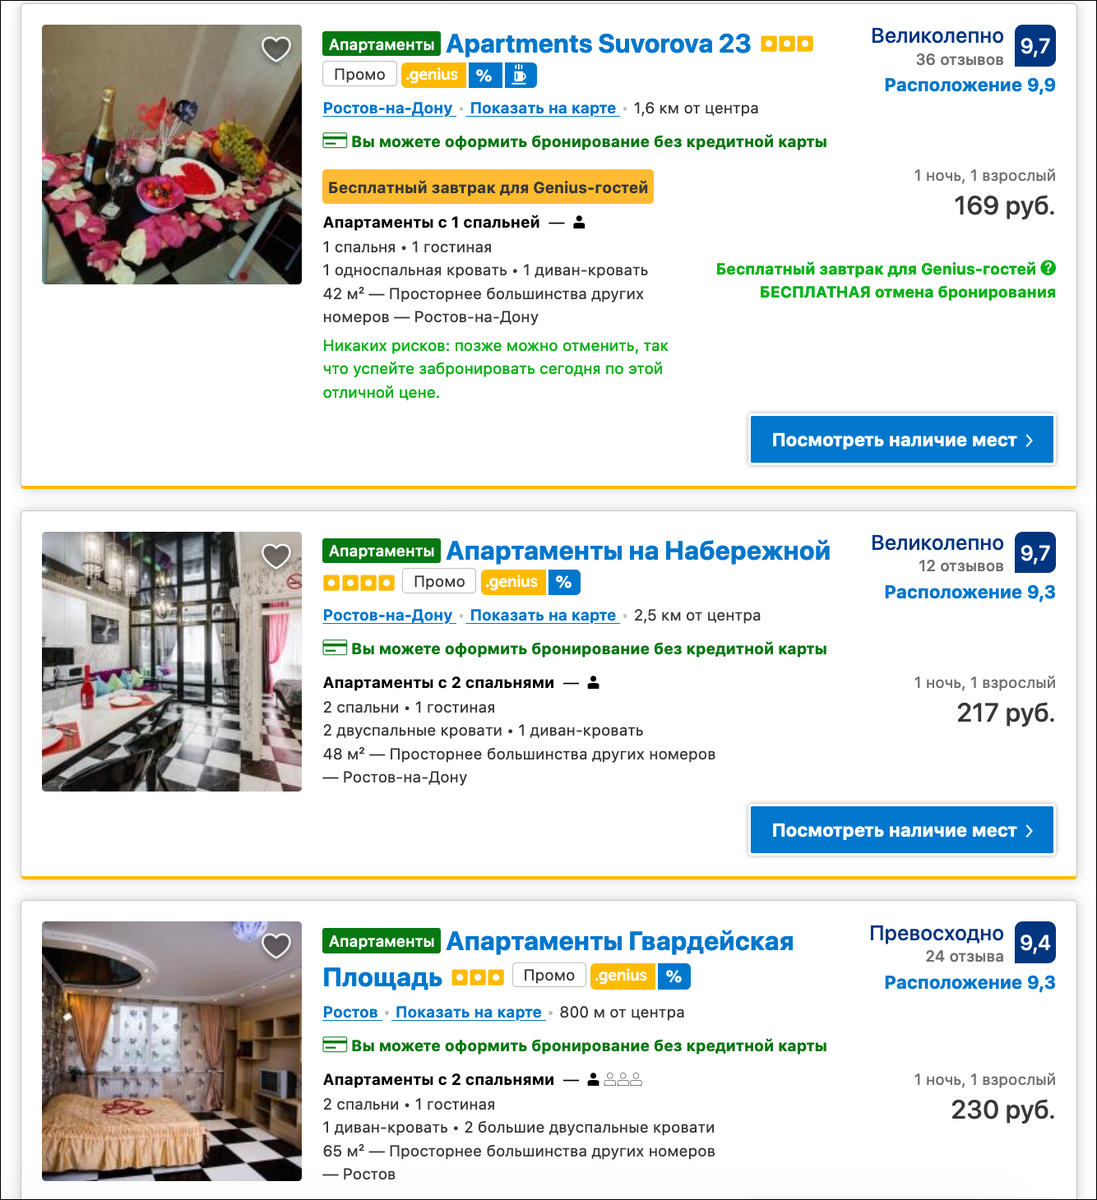 Отель за 169 рублей или как хитро в Ростове-на-Дону обманывают на Booking.com